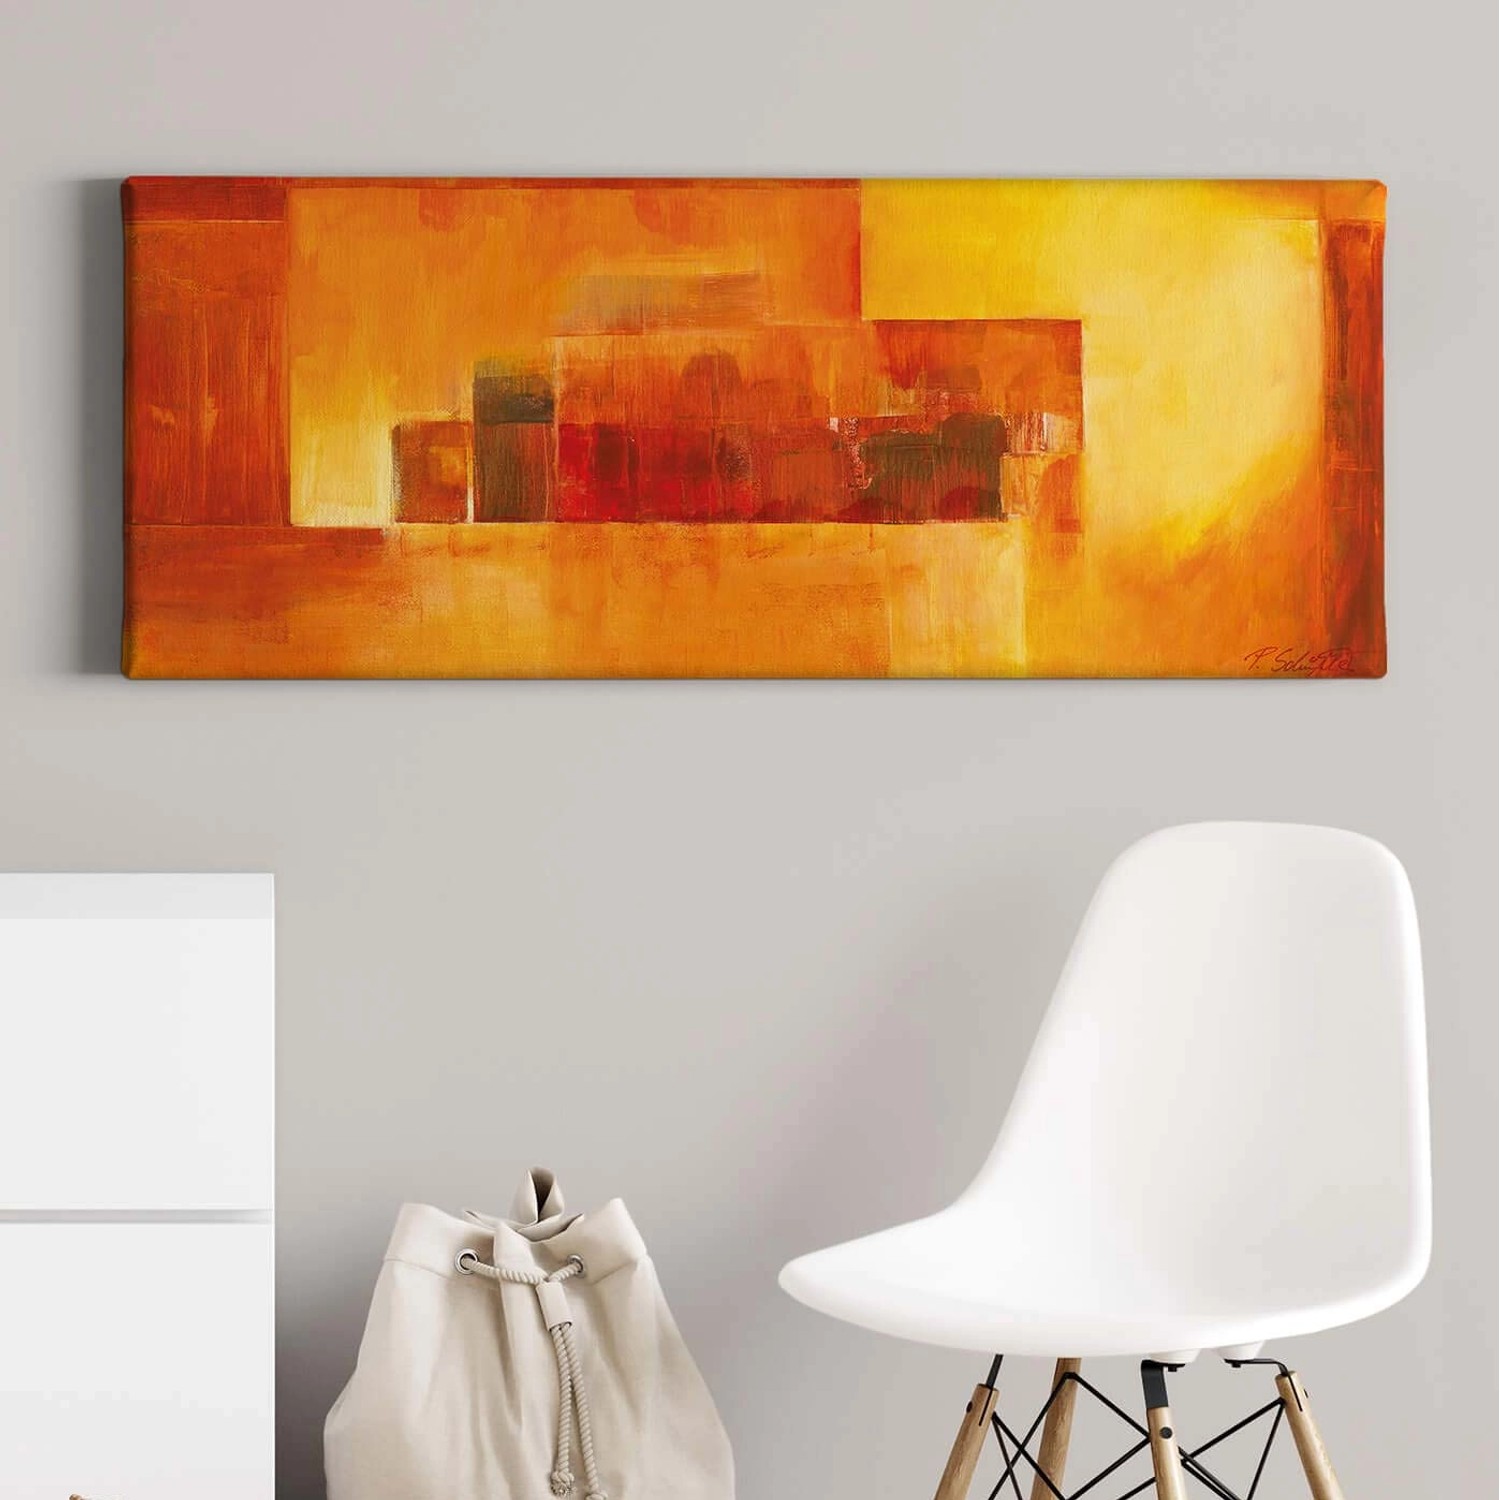 Bricoflor Abstraktes Bild In Rot Orange Kunst Leinwand Bild Im Gemälde Stil Mit Geometrischem Design Kunstdruck Leinwand